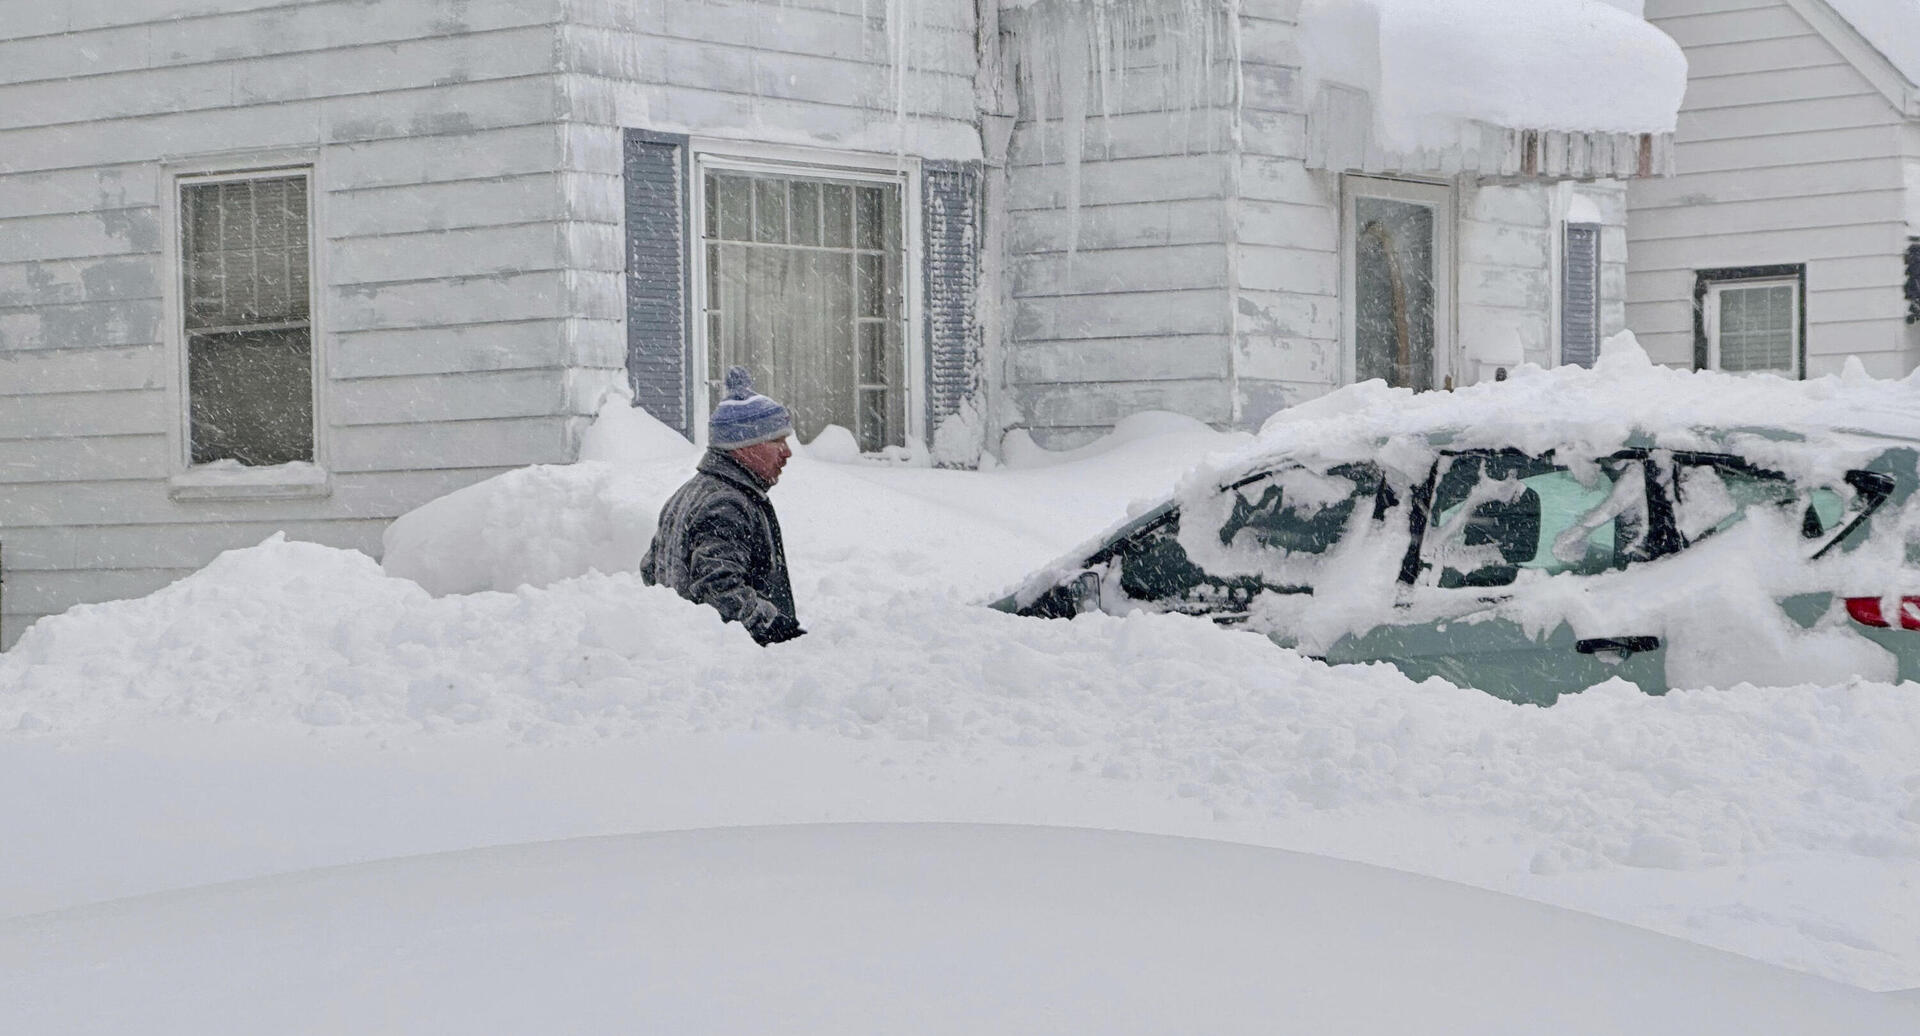  פוטו מזג אוויר קפוא מכונית קבורה בשלג בופאלו